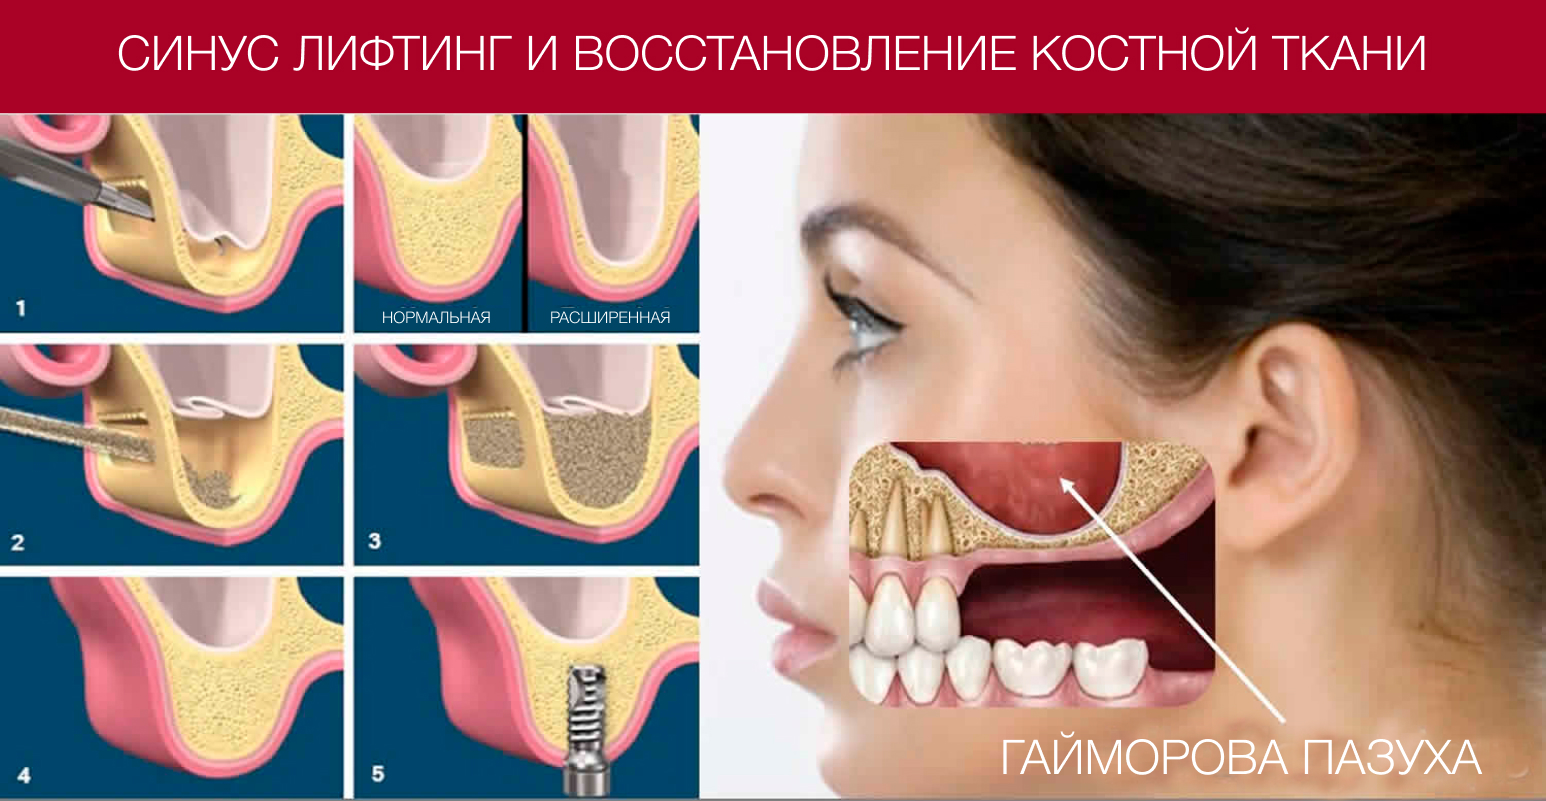 Восстановление костной ткани зубов. Синус-лифтинг (в зависимости от метода). Синус-лифтинг (костная пластика, остеопластика). Остеотомный синус лифтинг.